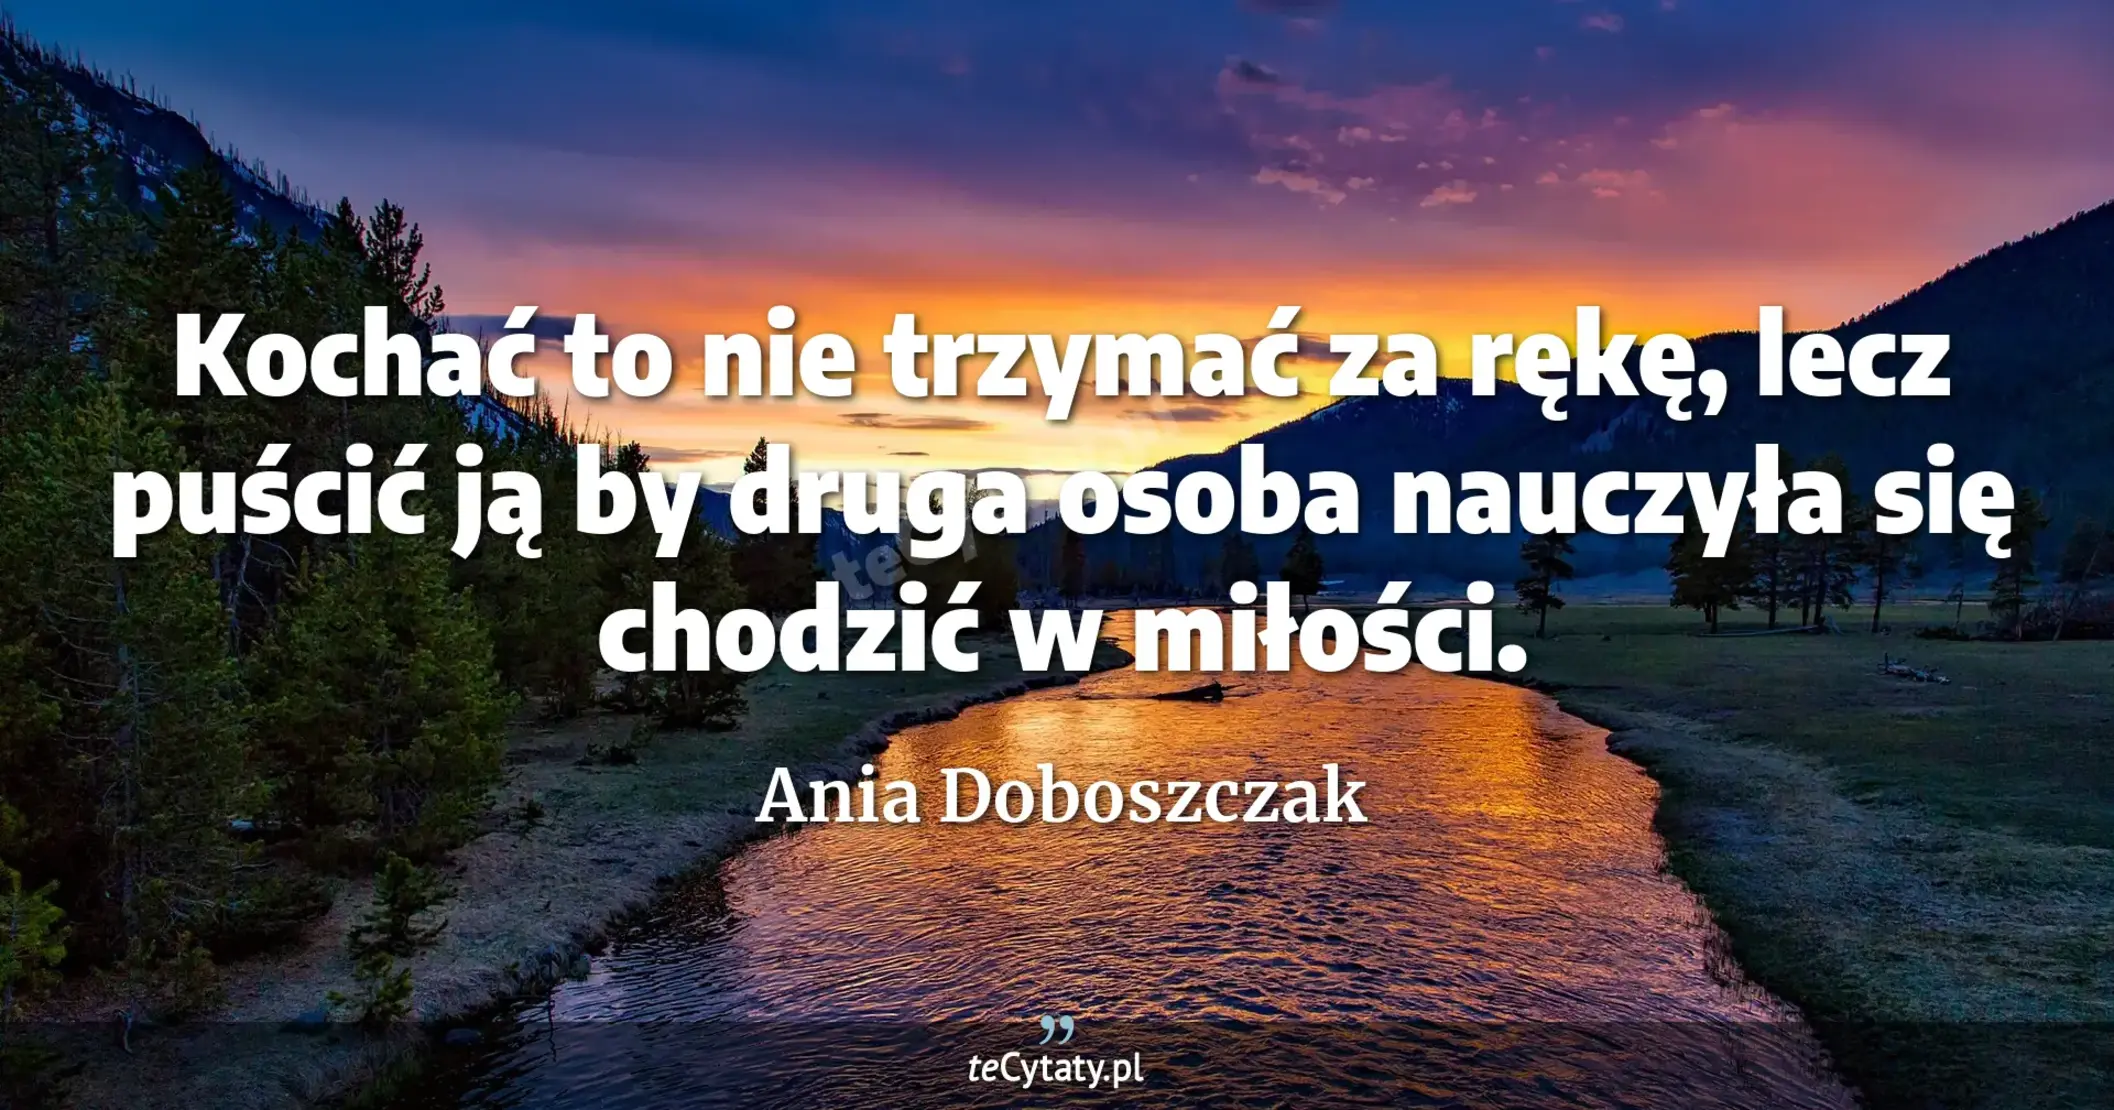 Kochać to nie trzymać za rękę, lecz puścić ją by druga osoba nauczyła się chodzić w miłości. - Ania Doboszczak